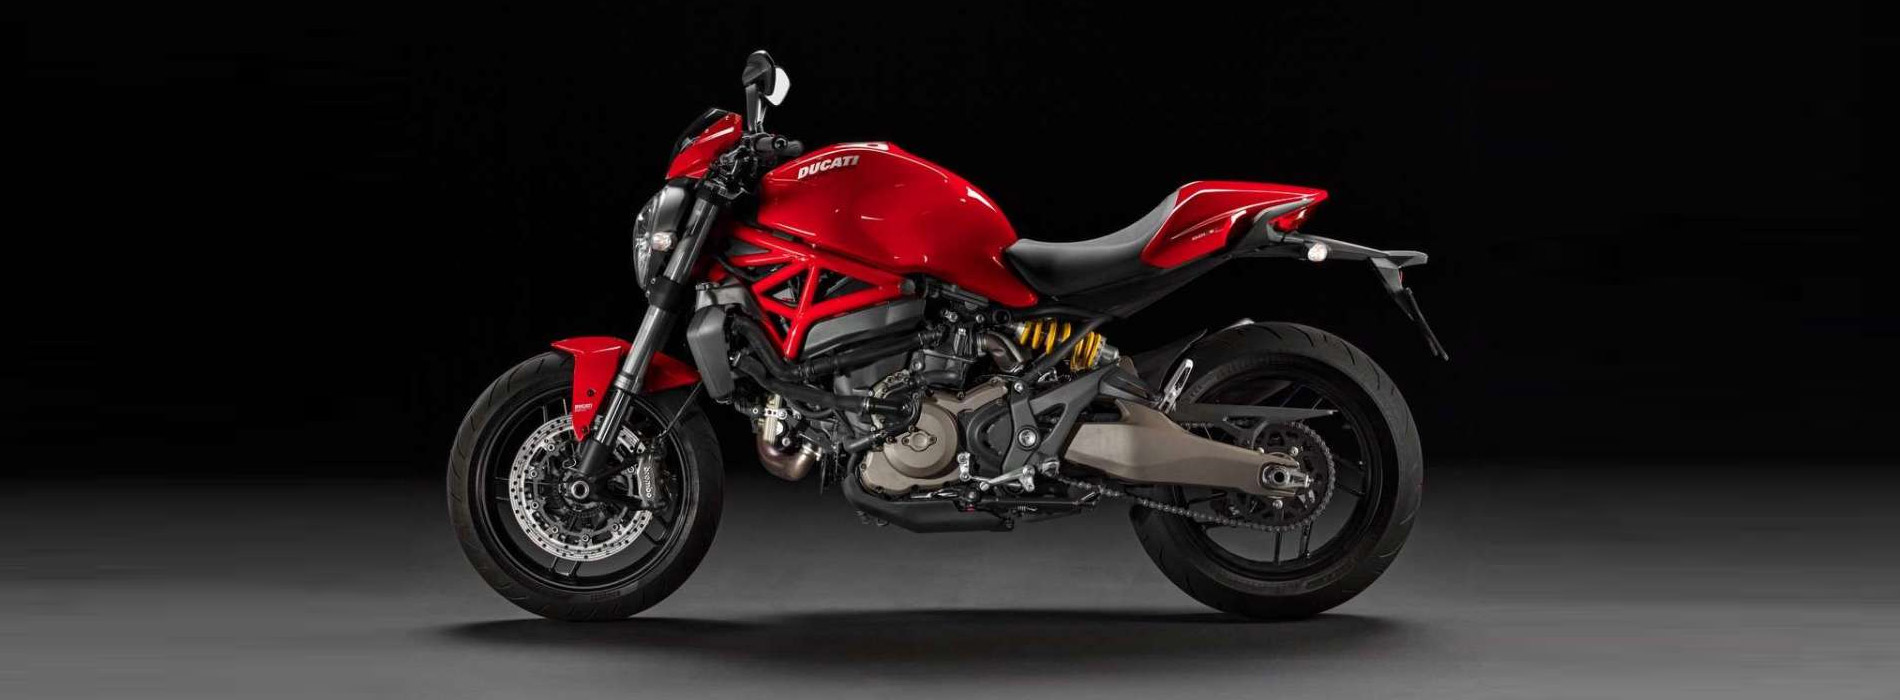 Ducati Monster 821 Red